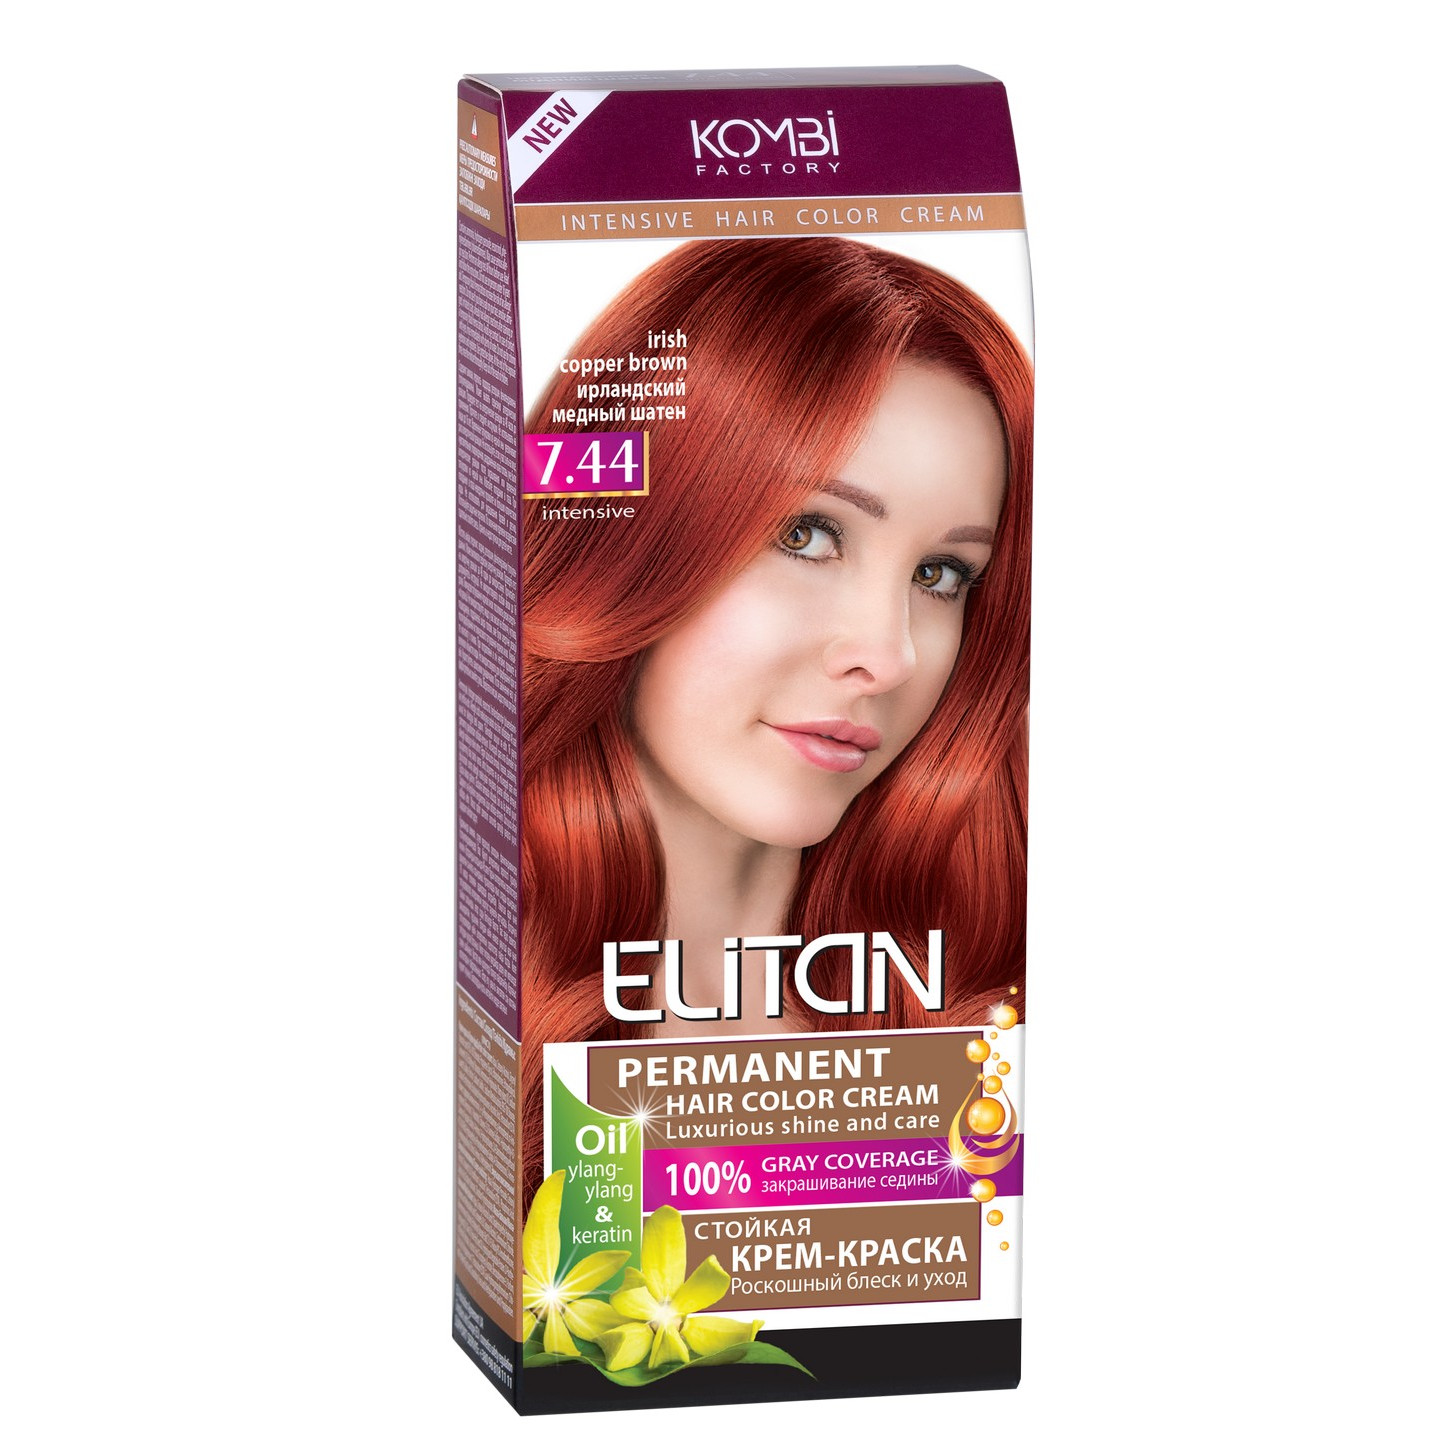 ELITAN permanentná krémová farba na vlasy  7.44 IRISH COPPER BROWN